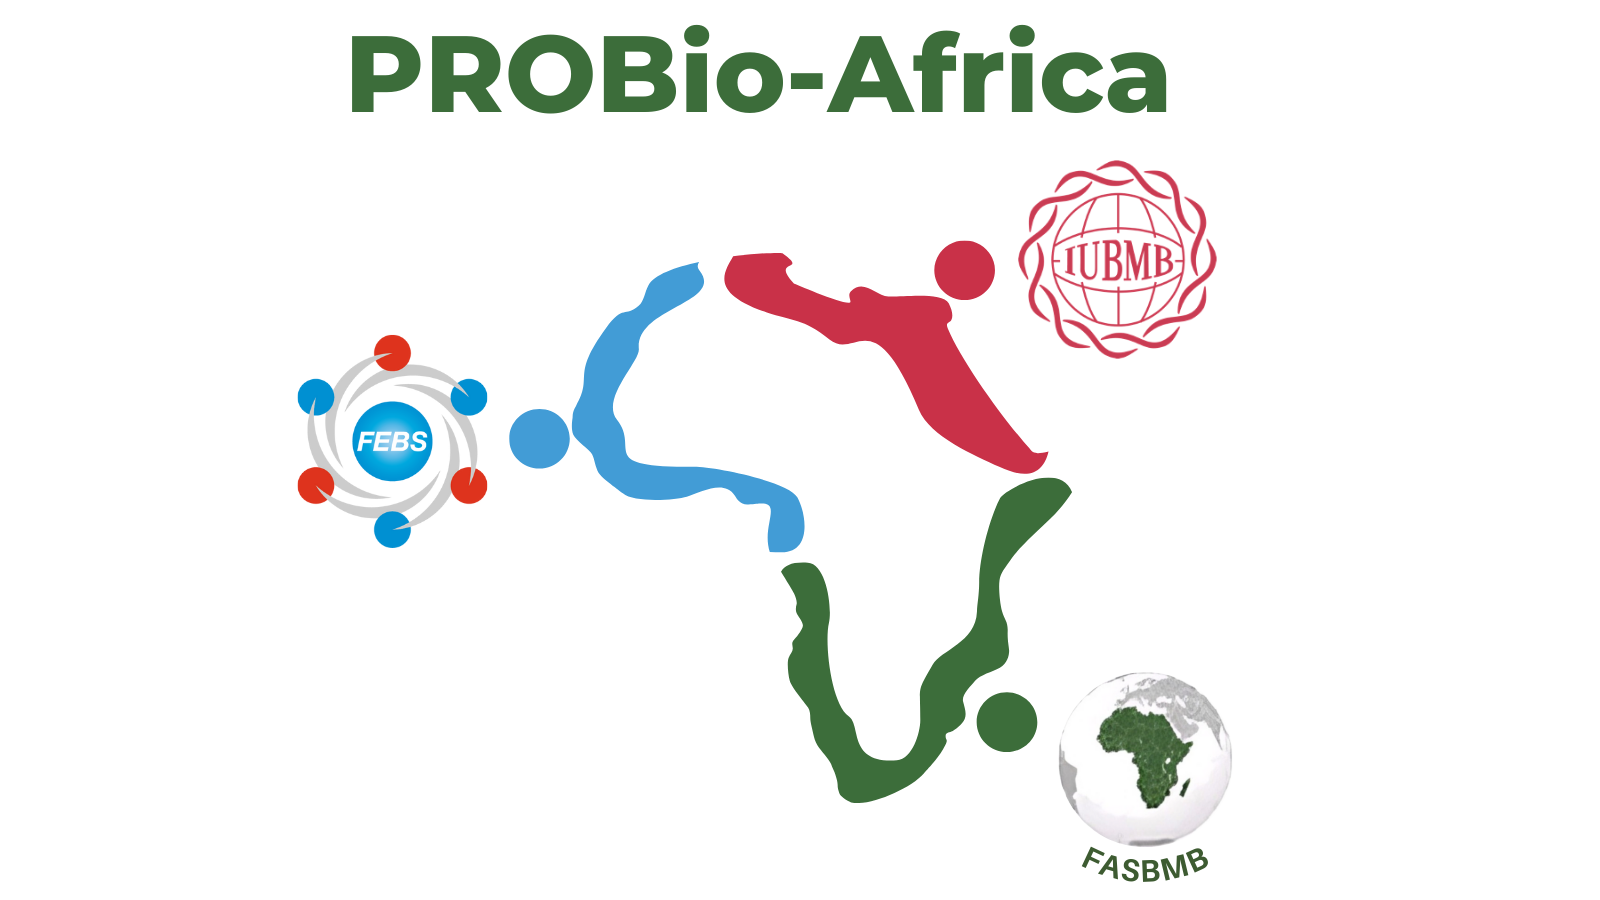 PROBio-Africa